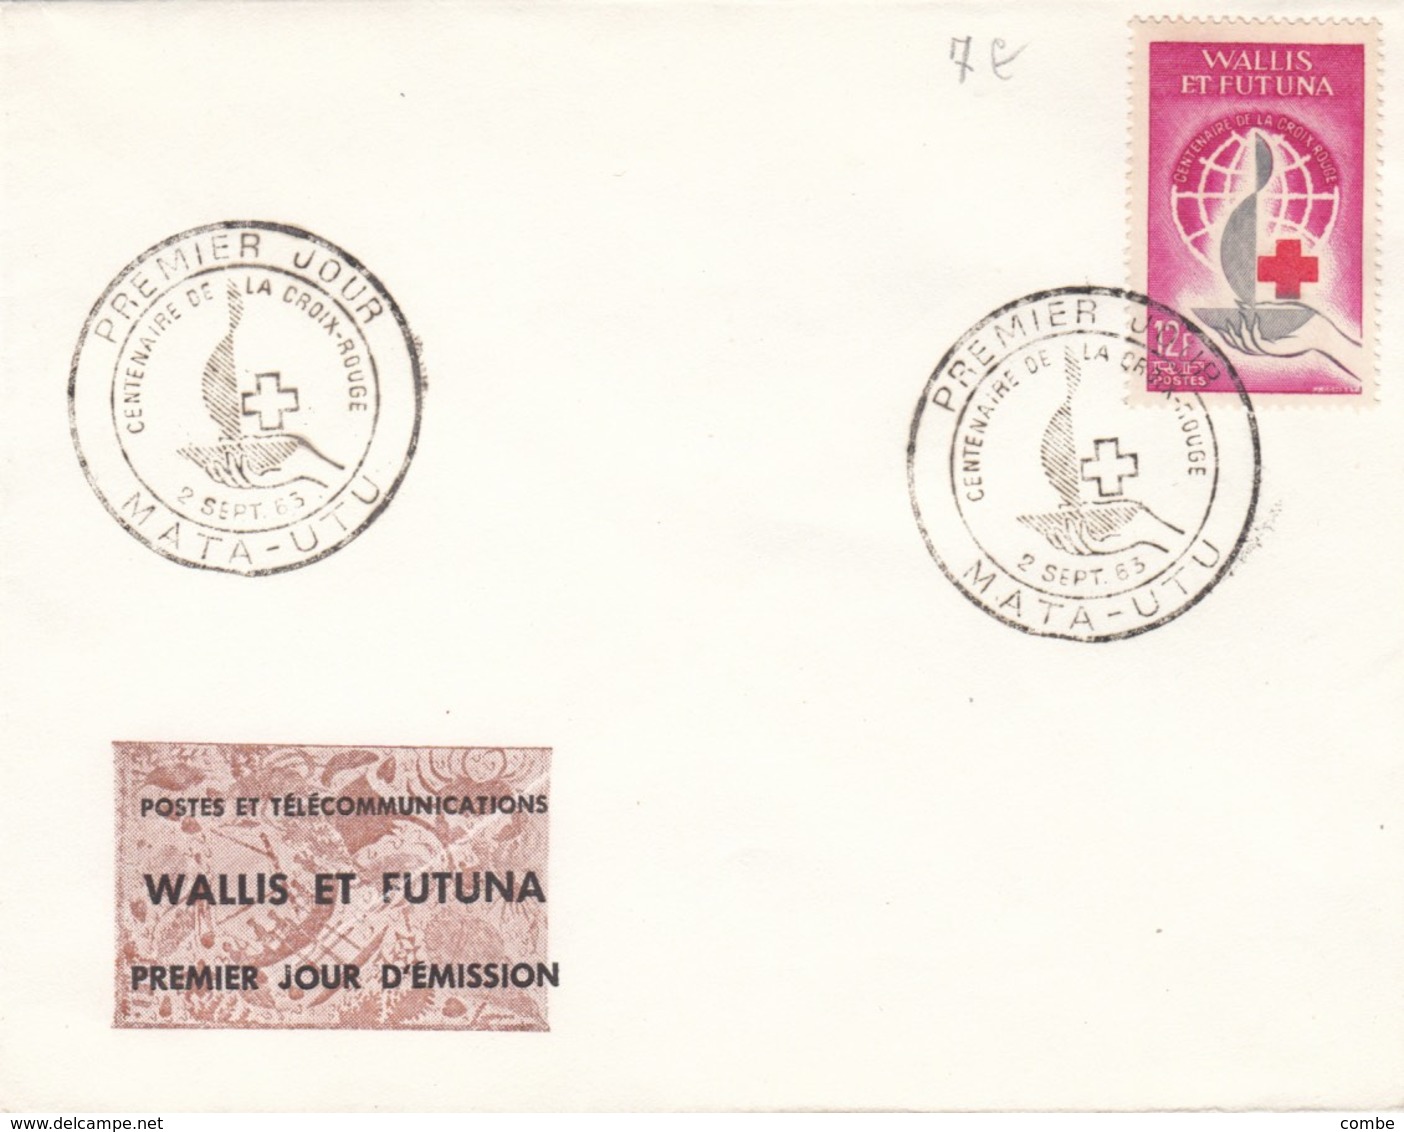 WALLIS ET FUTUNA PREMIER JOUR CROIX-ROUGE 1963 MATA-UTU - Lettres & Documents